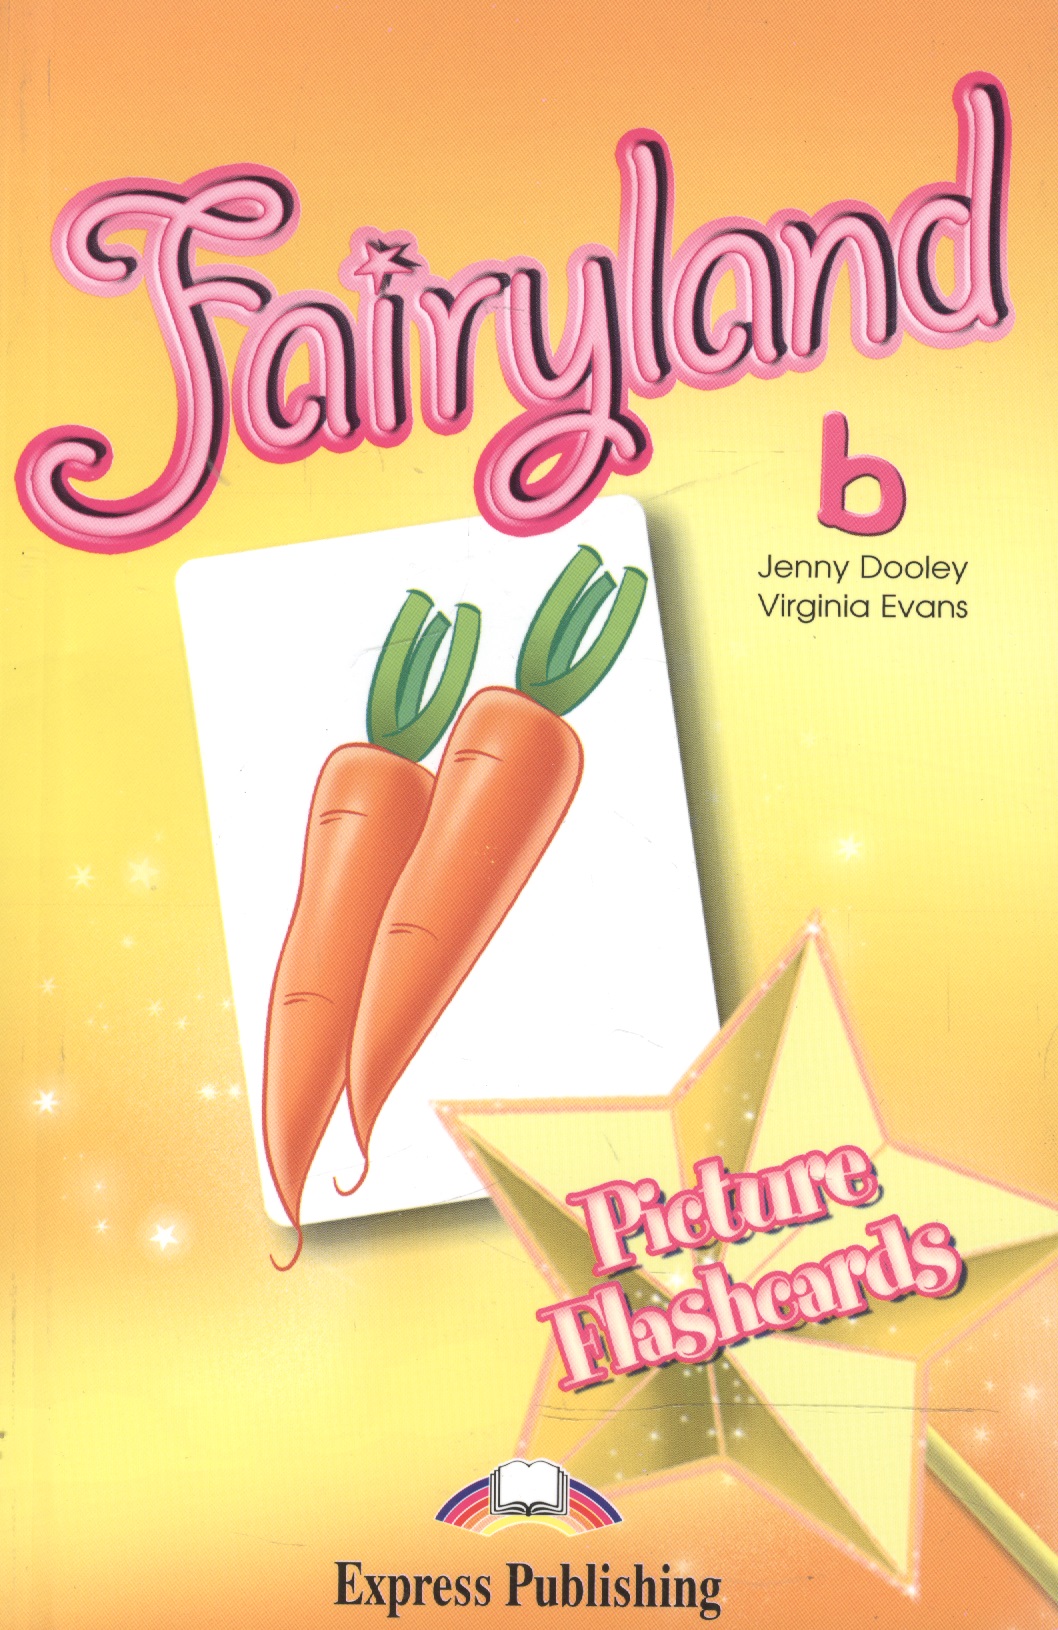 Эванс Вирджиния Fairyland 2. Picture Flashcards. Beginner. Раздаточный материал эванс вирджиния fairyland 5 vocabulary